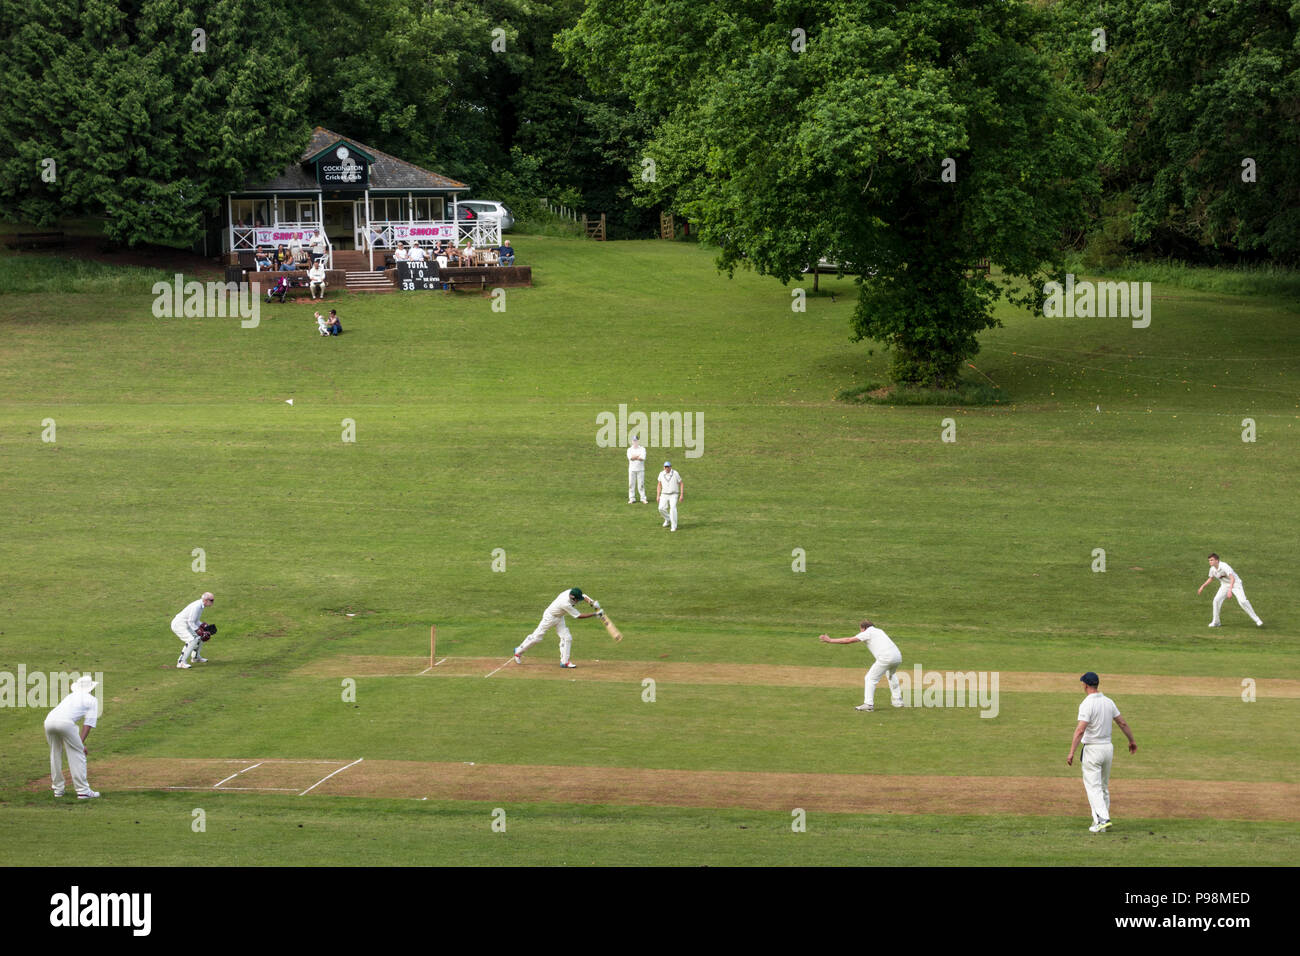 Les joueurs sur les terrains de cricket, Cockington Village, Torquay, Devon, UK Banque D'Images